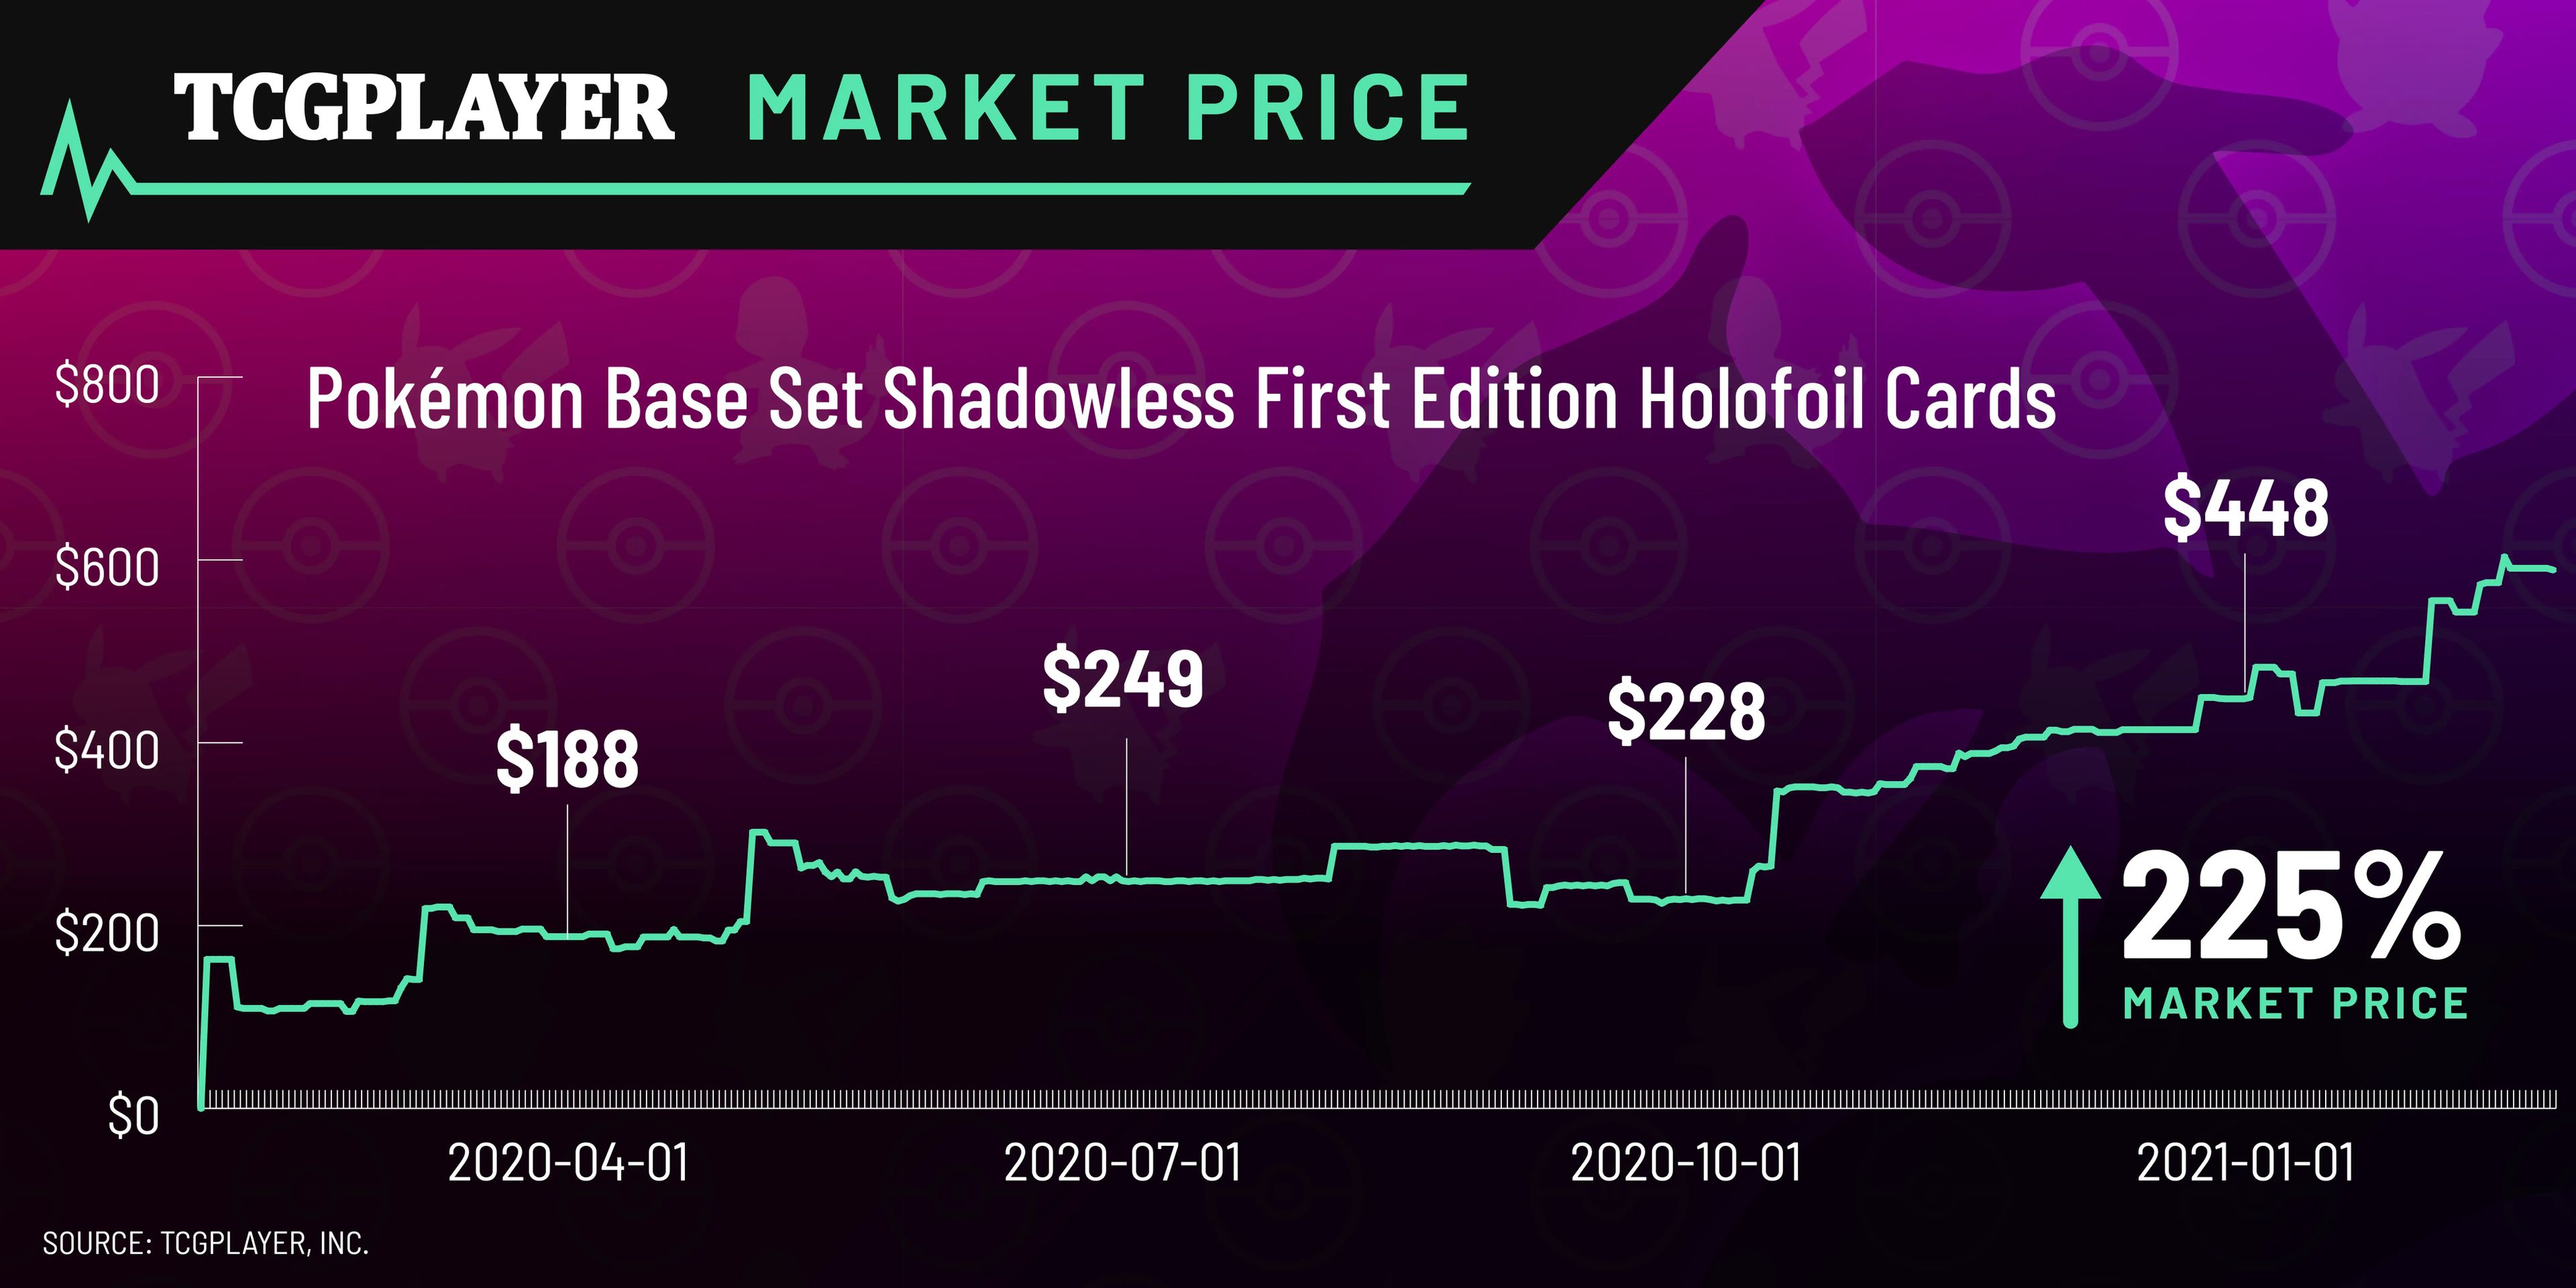 El aumento en el valor de las cartas de Pokémon Shadowless First Edition durante el transcurso de 2020 en TCGplayer